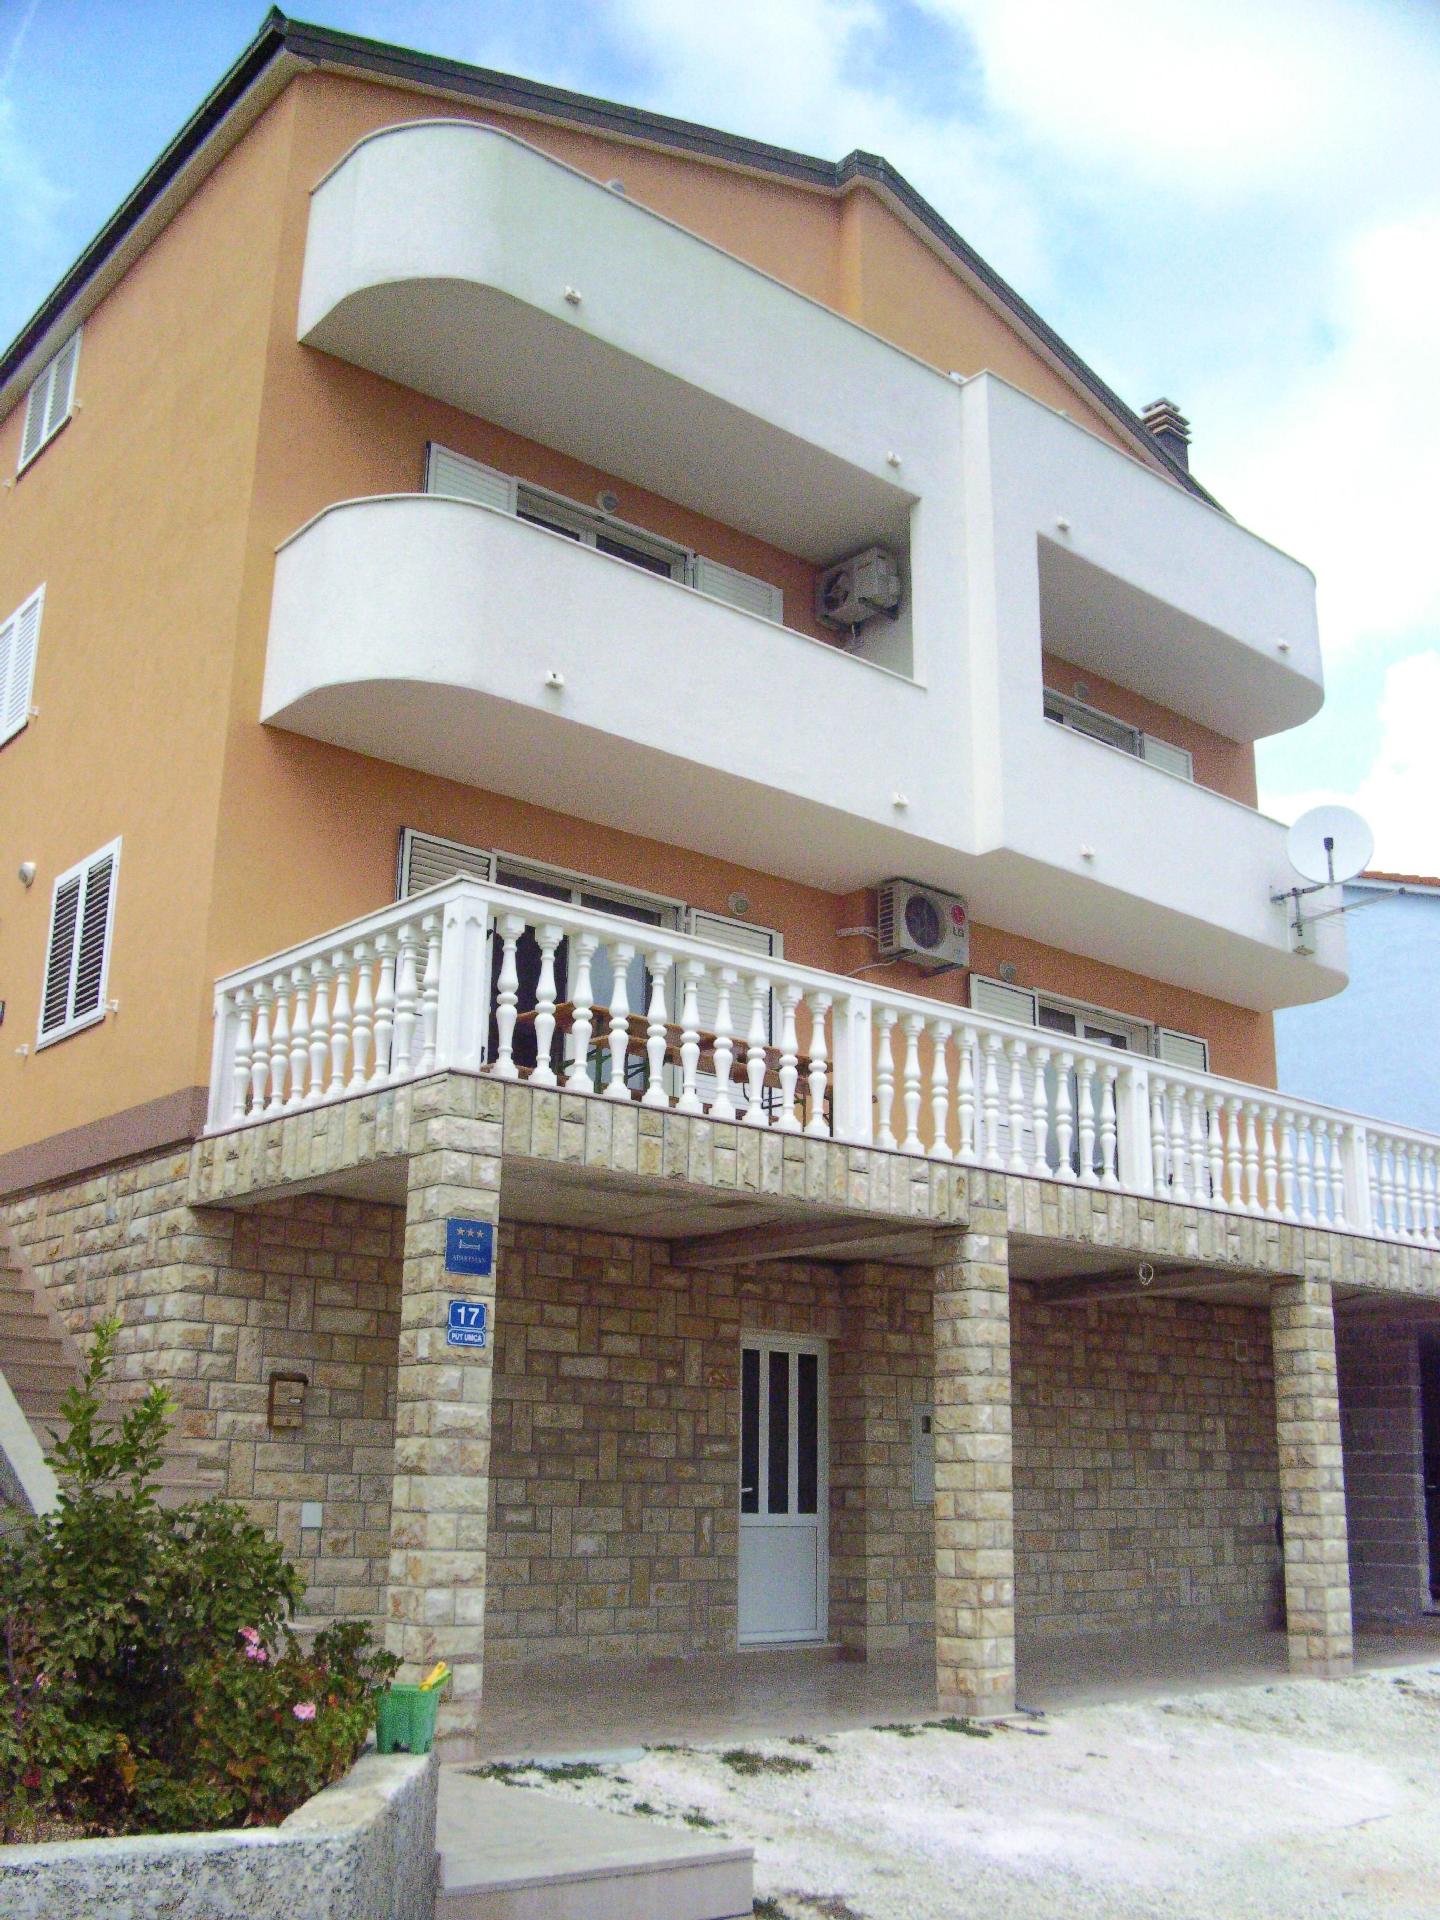 Appartment in der dritten Etage  in Kroatien